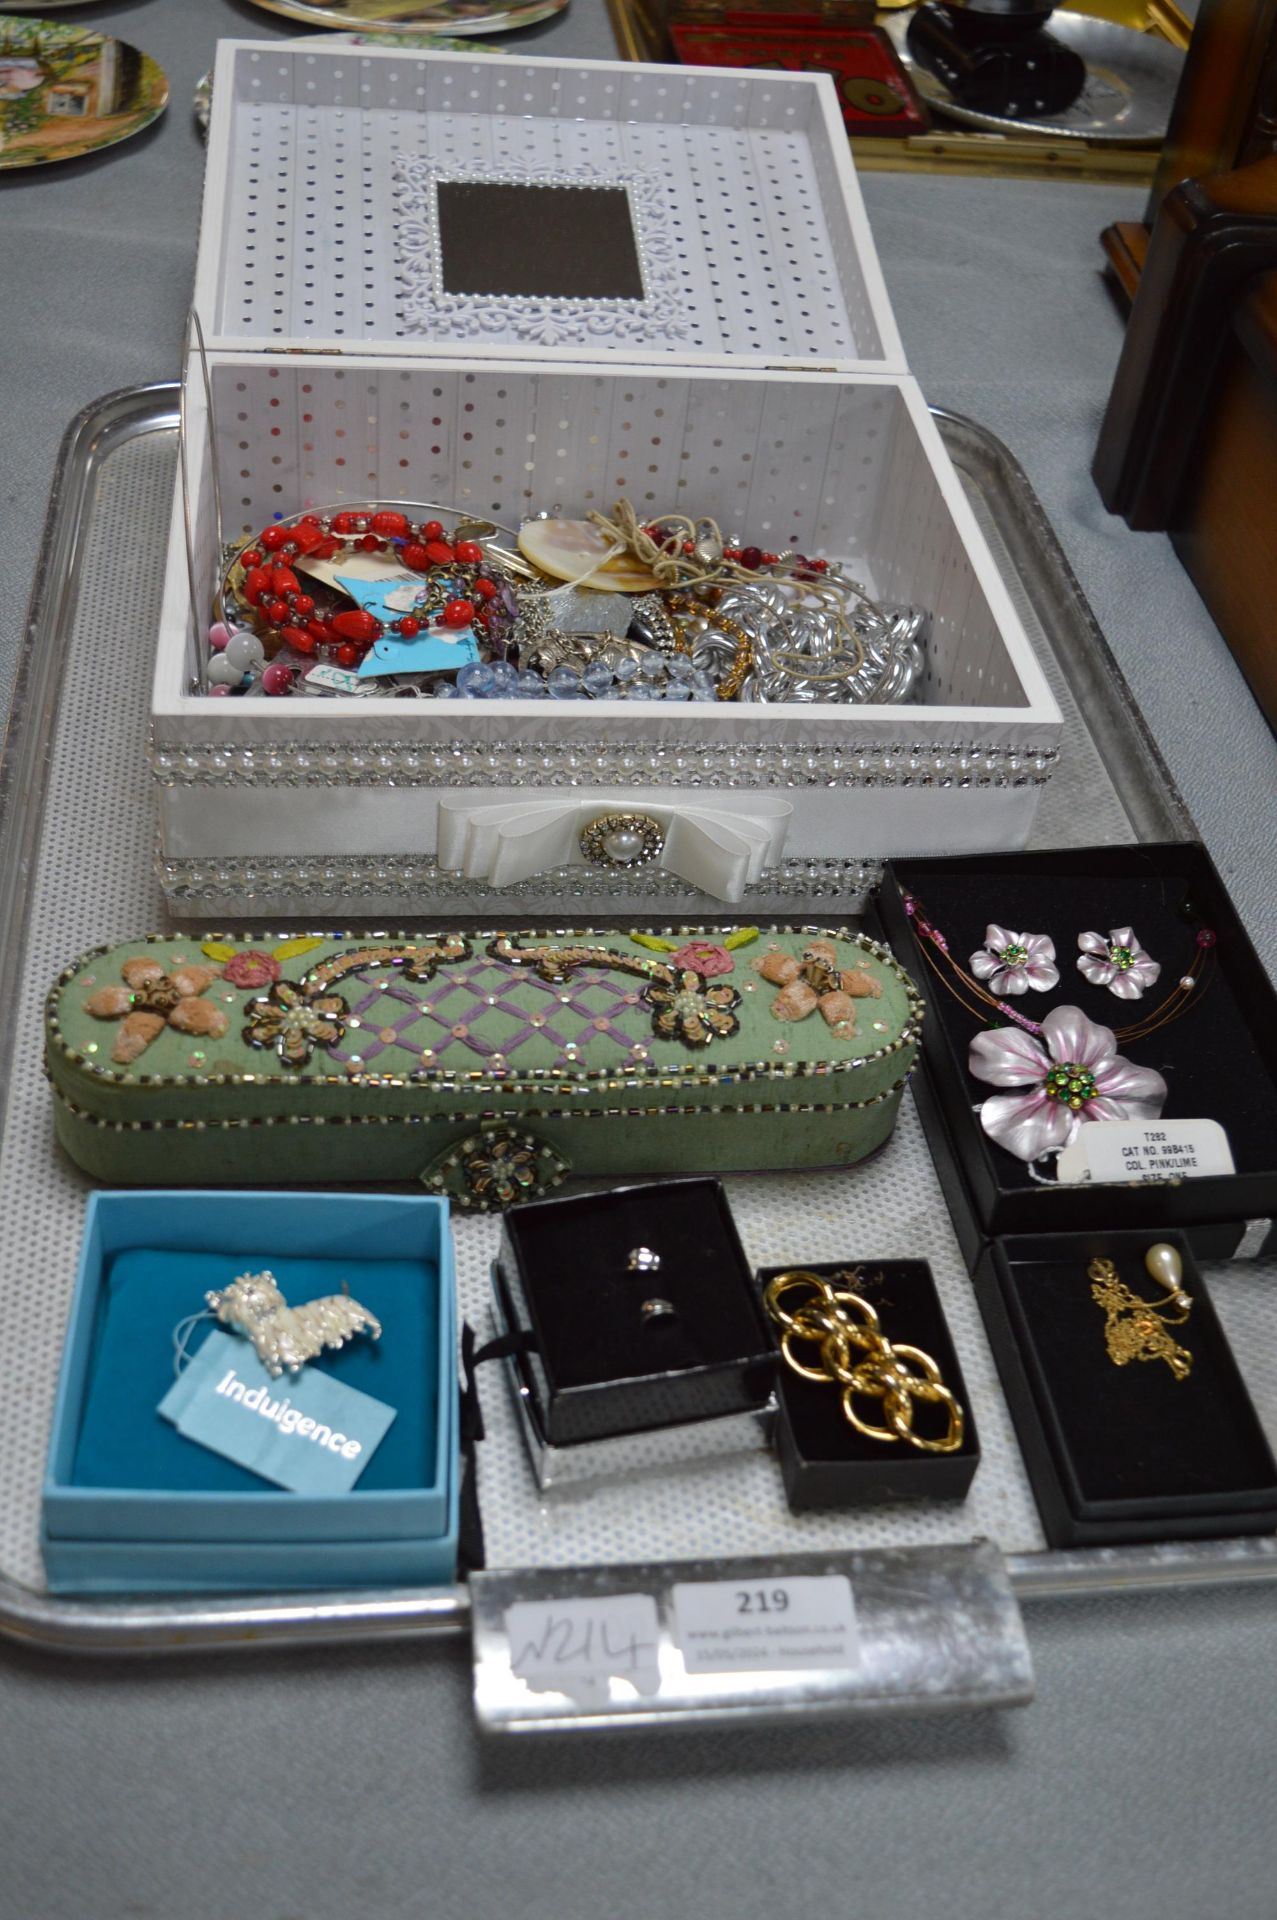 Jewellery Box and Costume Jewellery